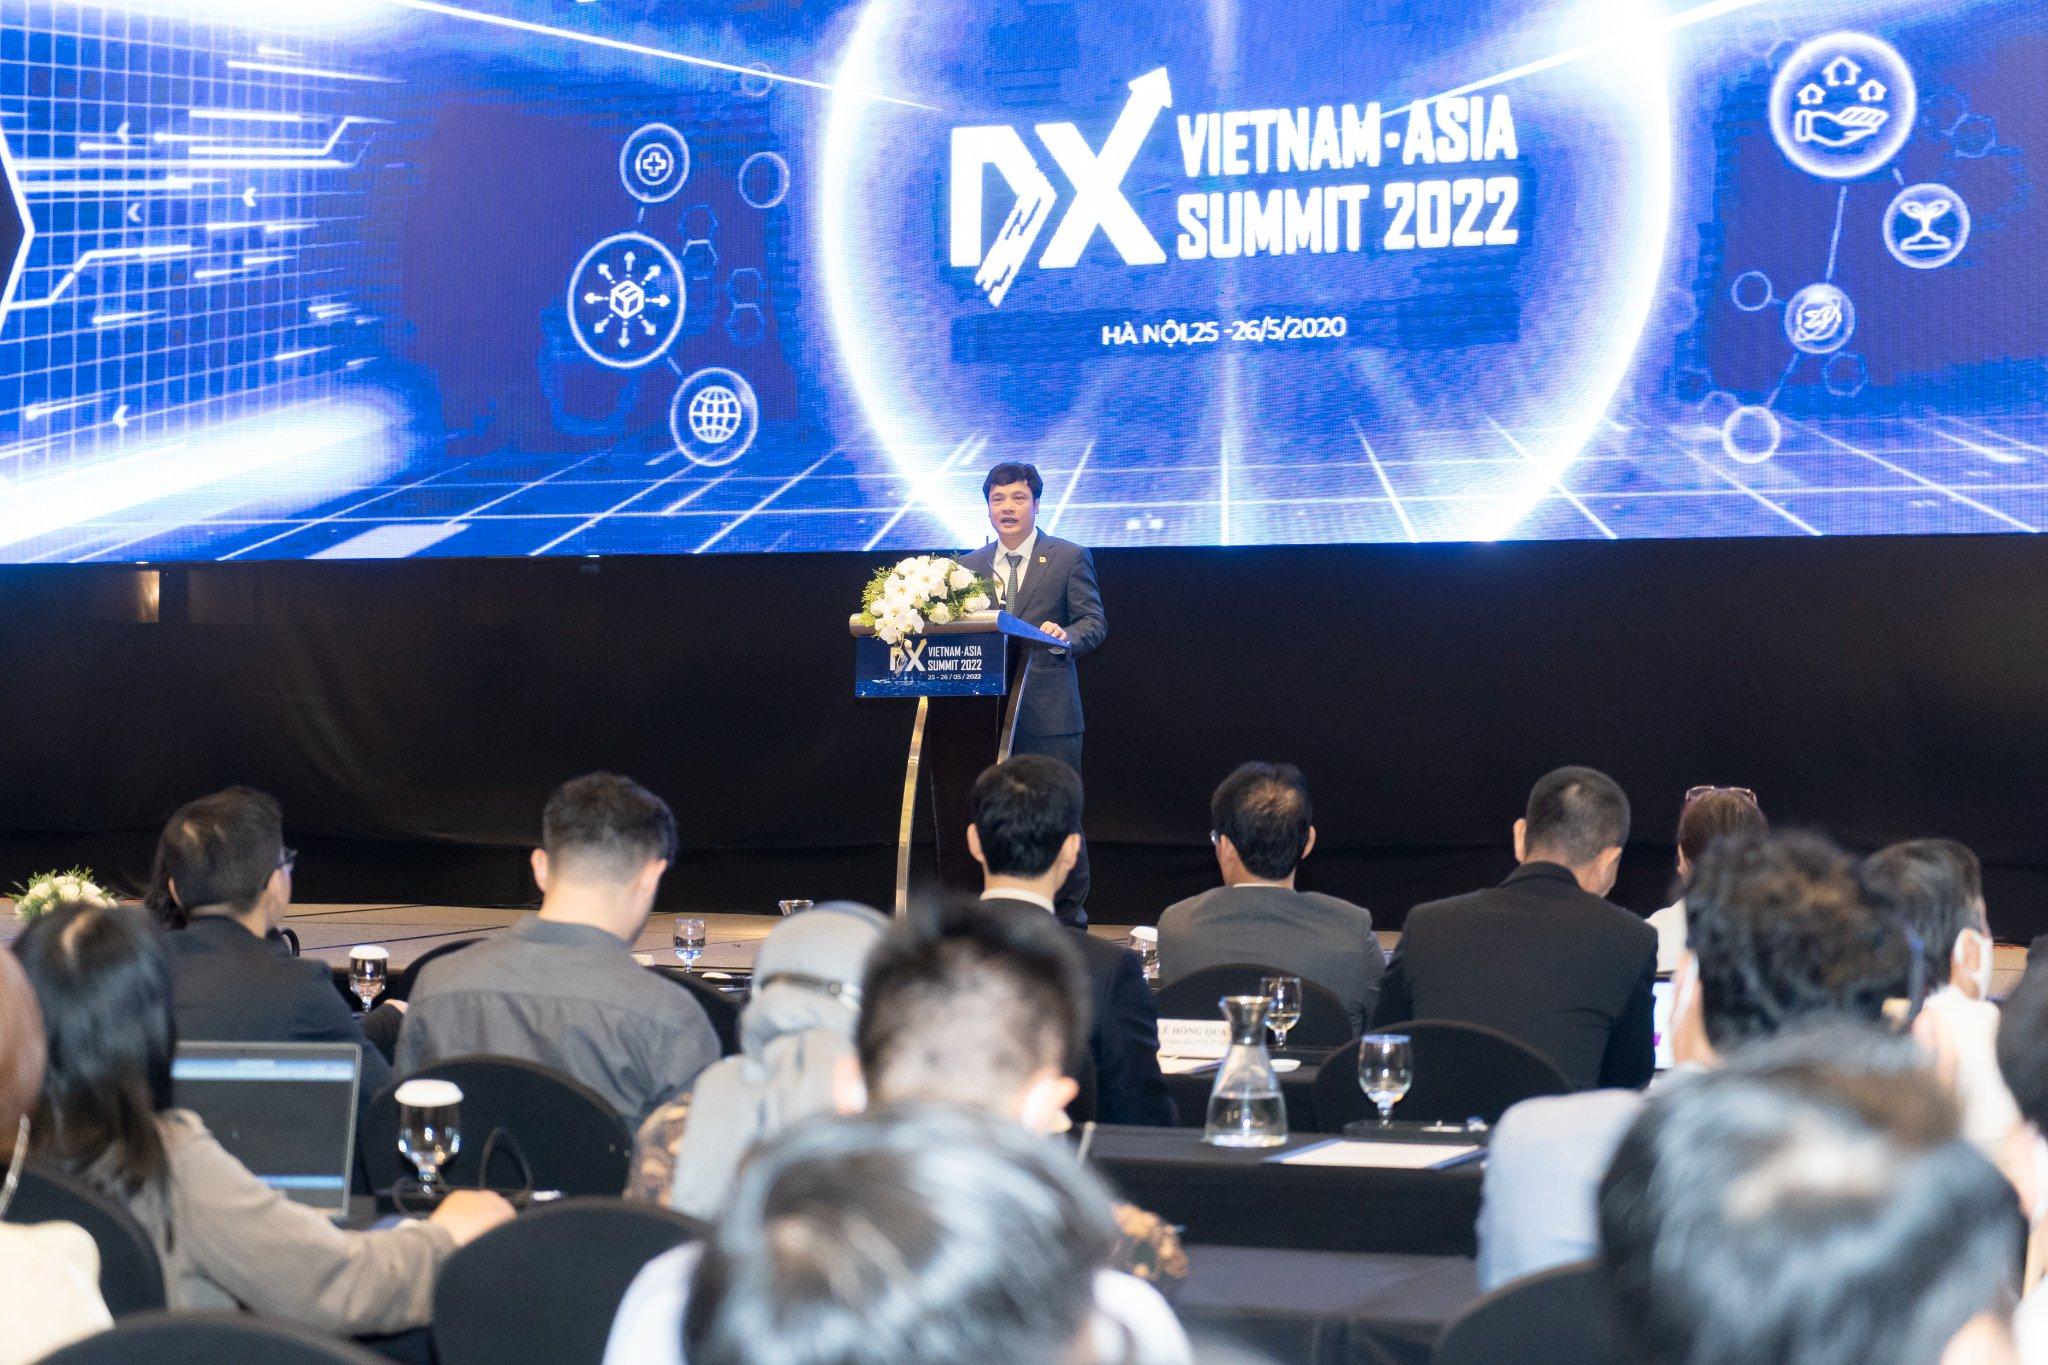 Diễn đàn cấp cao chuyển đổi số Việt Nam - Châu Á 2022